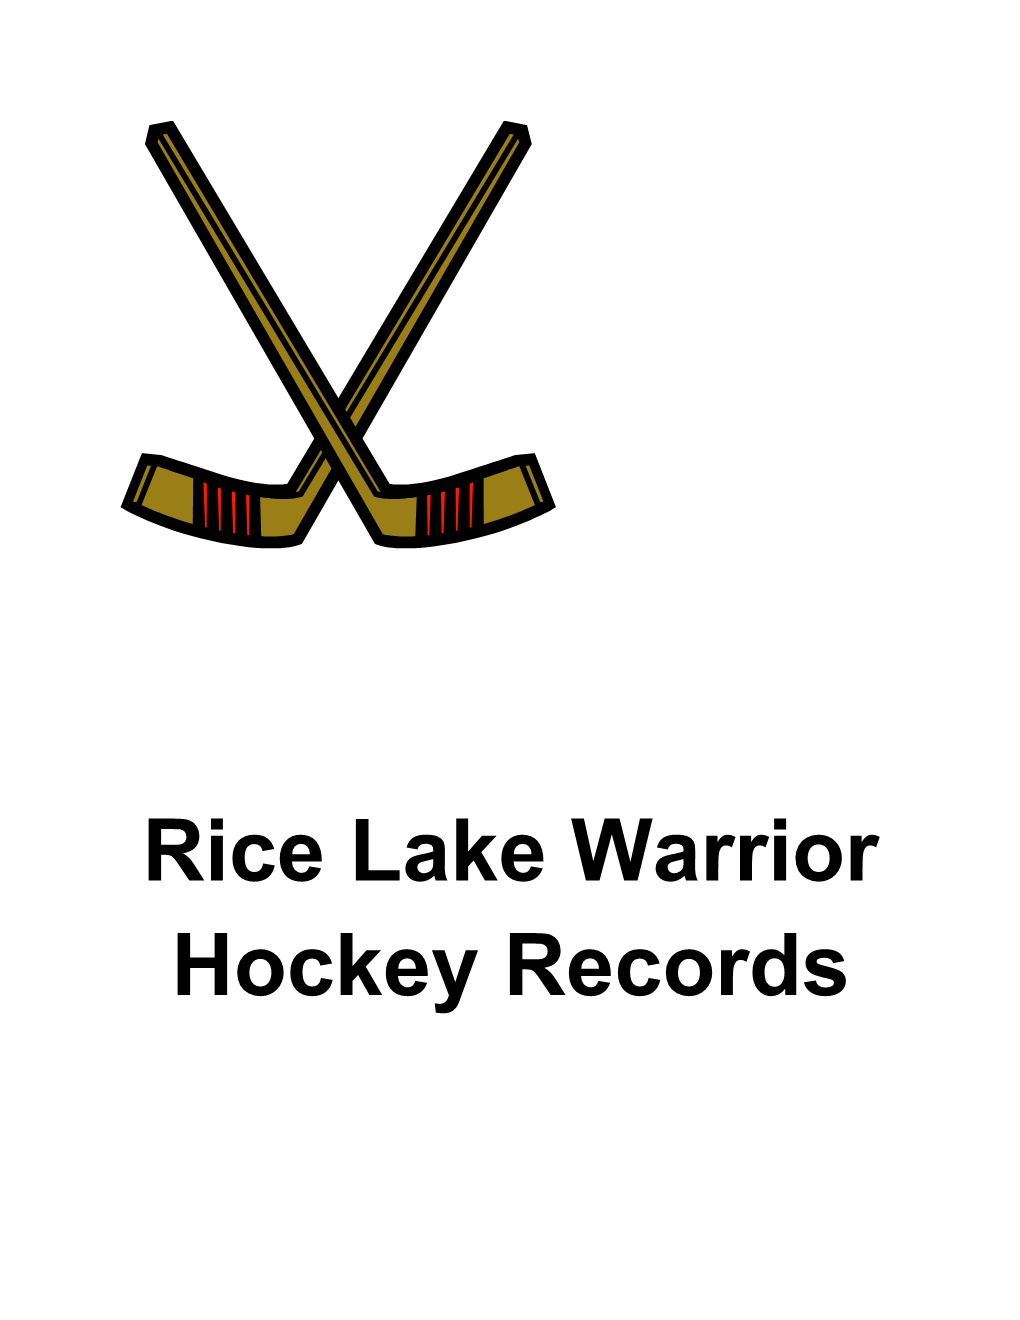 Rice Lake Warrior Hockey Records